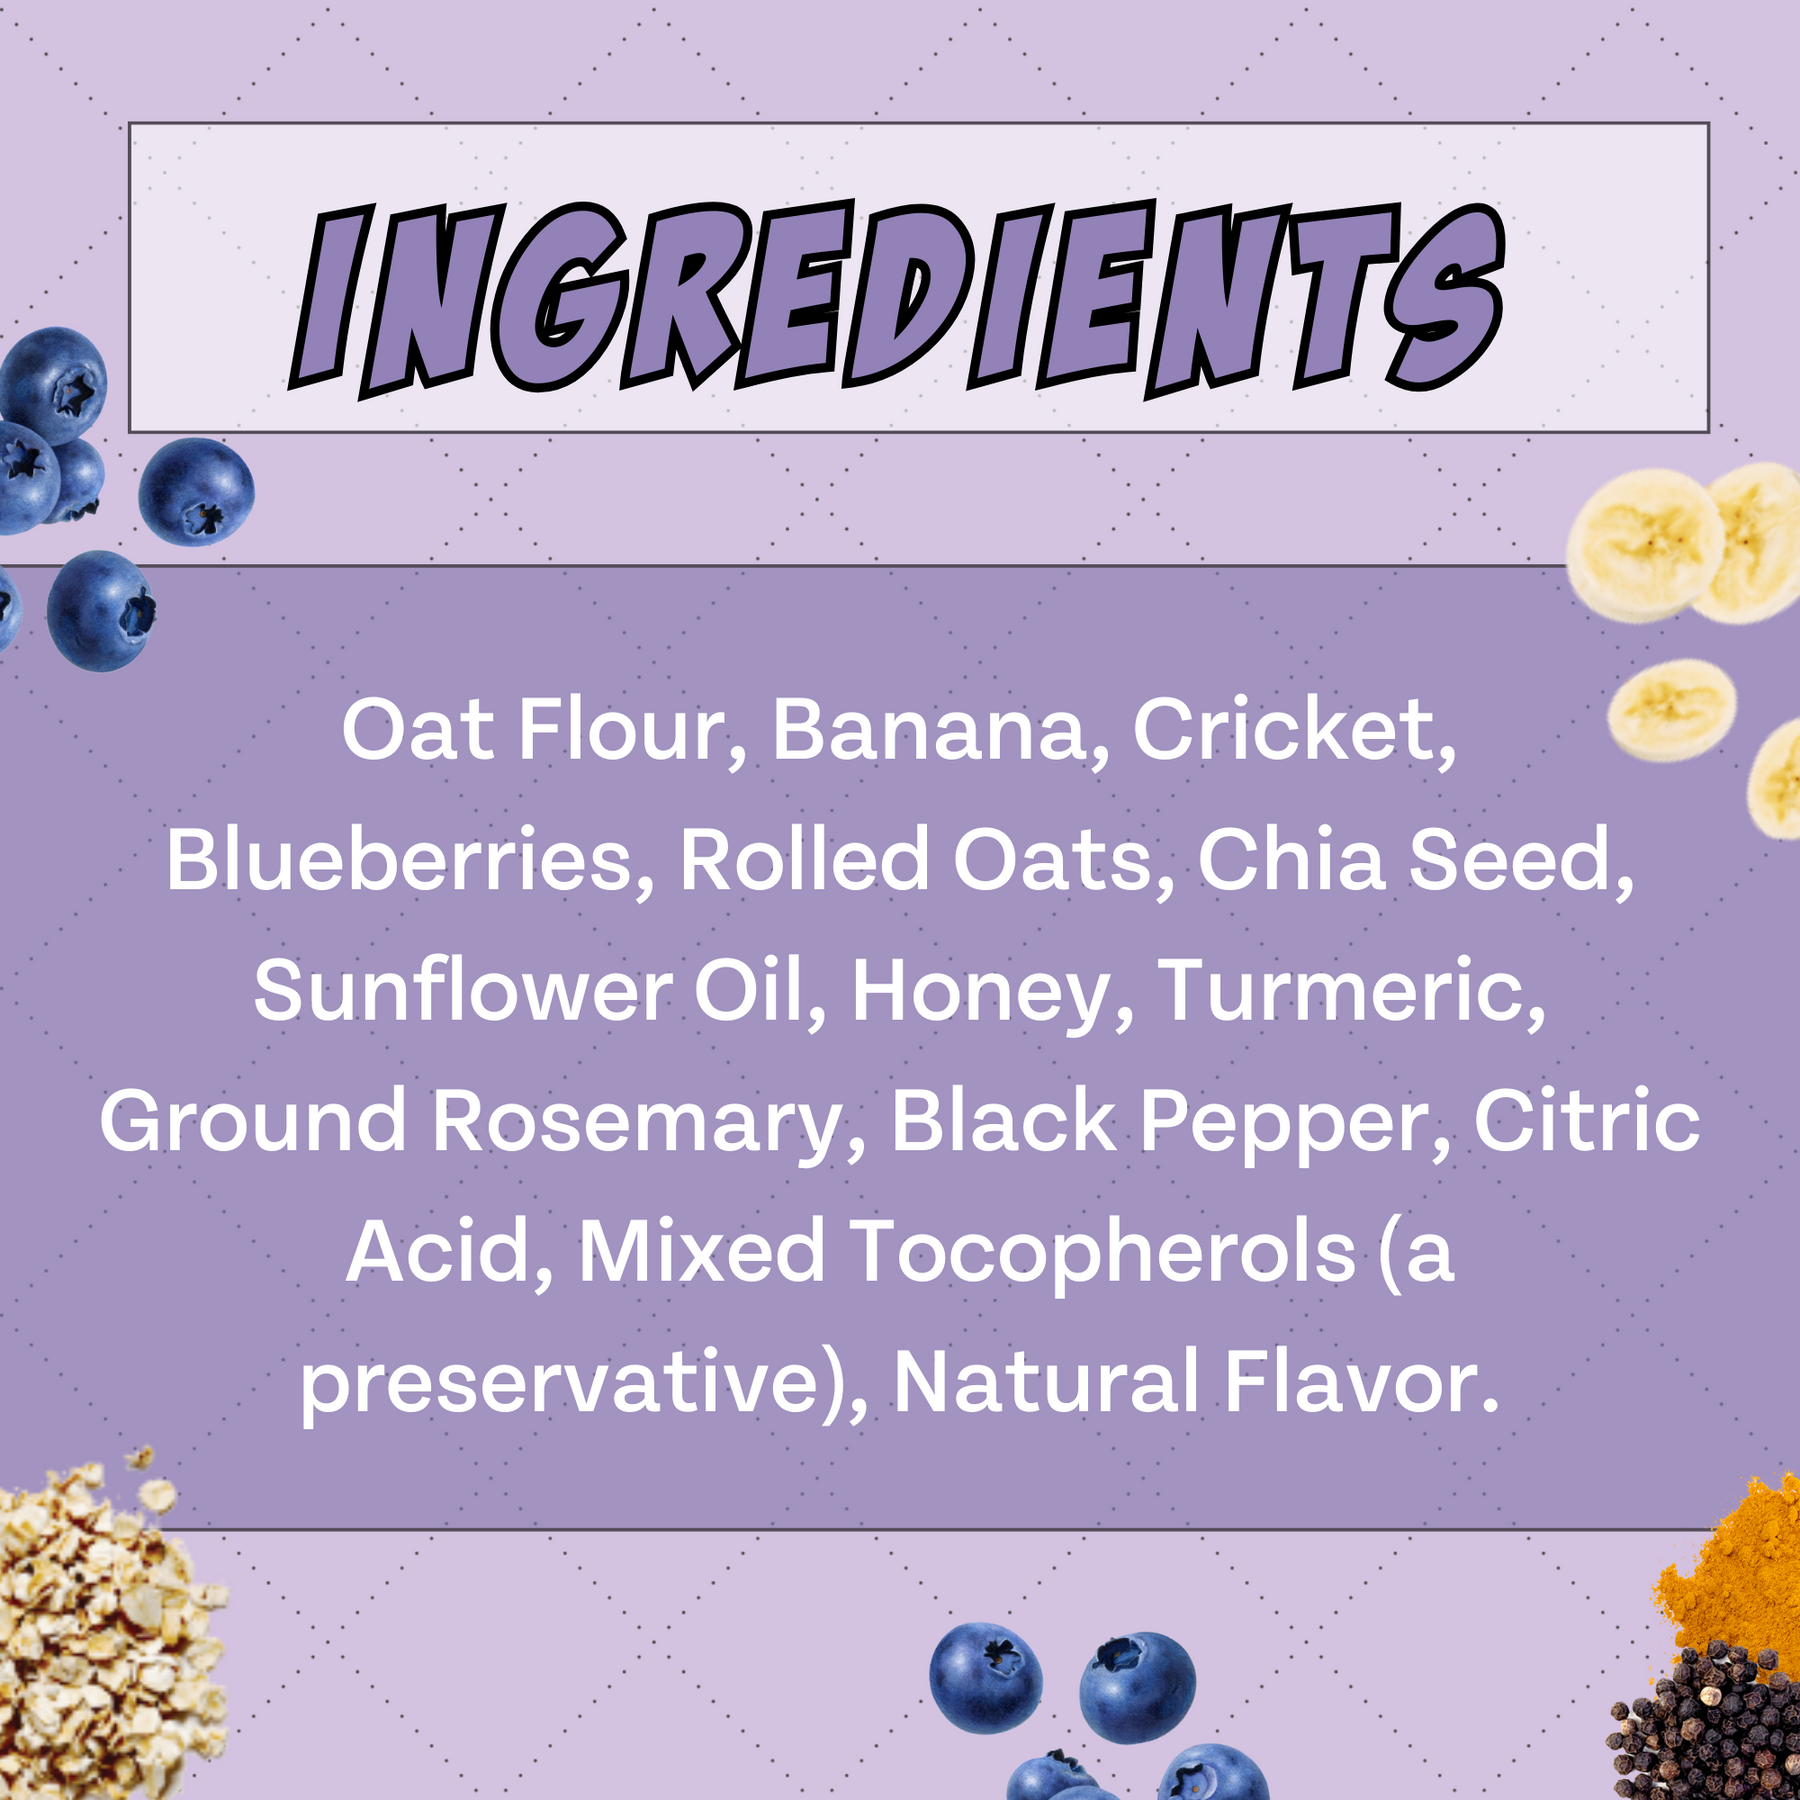 Antioxidant Dog Treats: Banana, Cricket, and Blueberry, 2pack